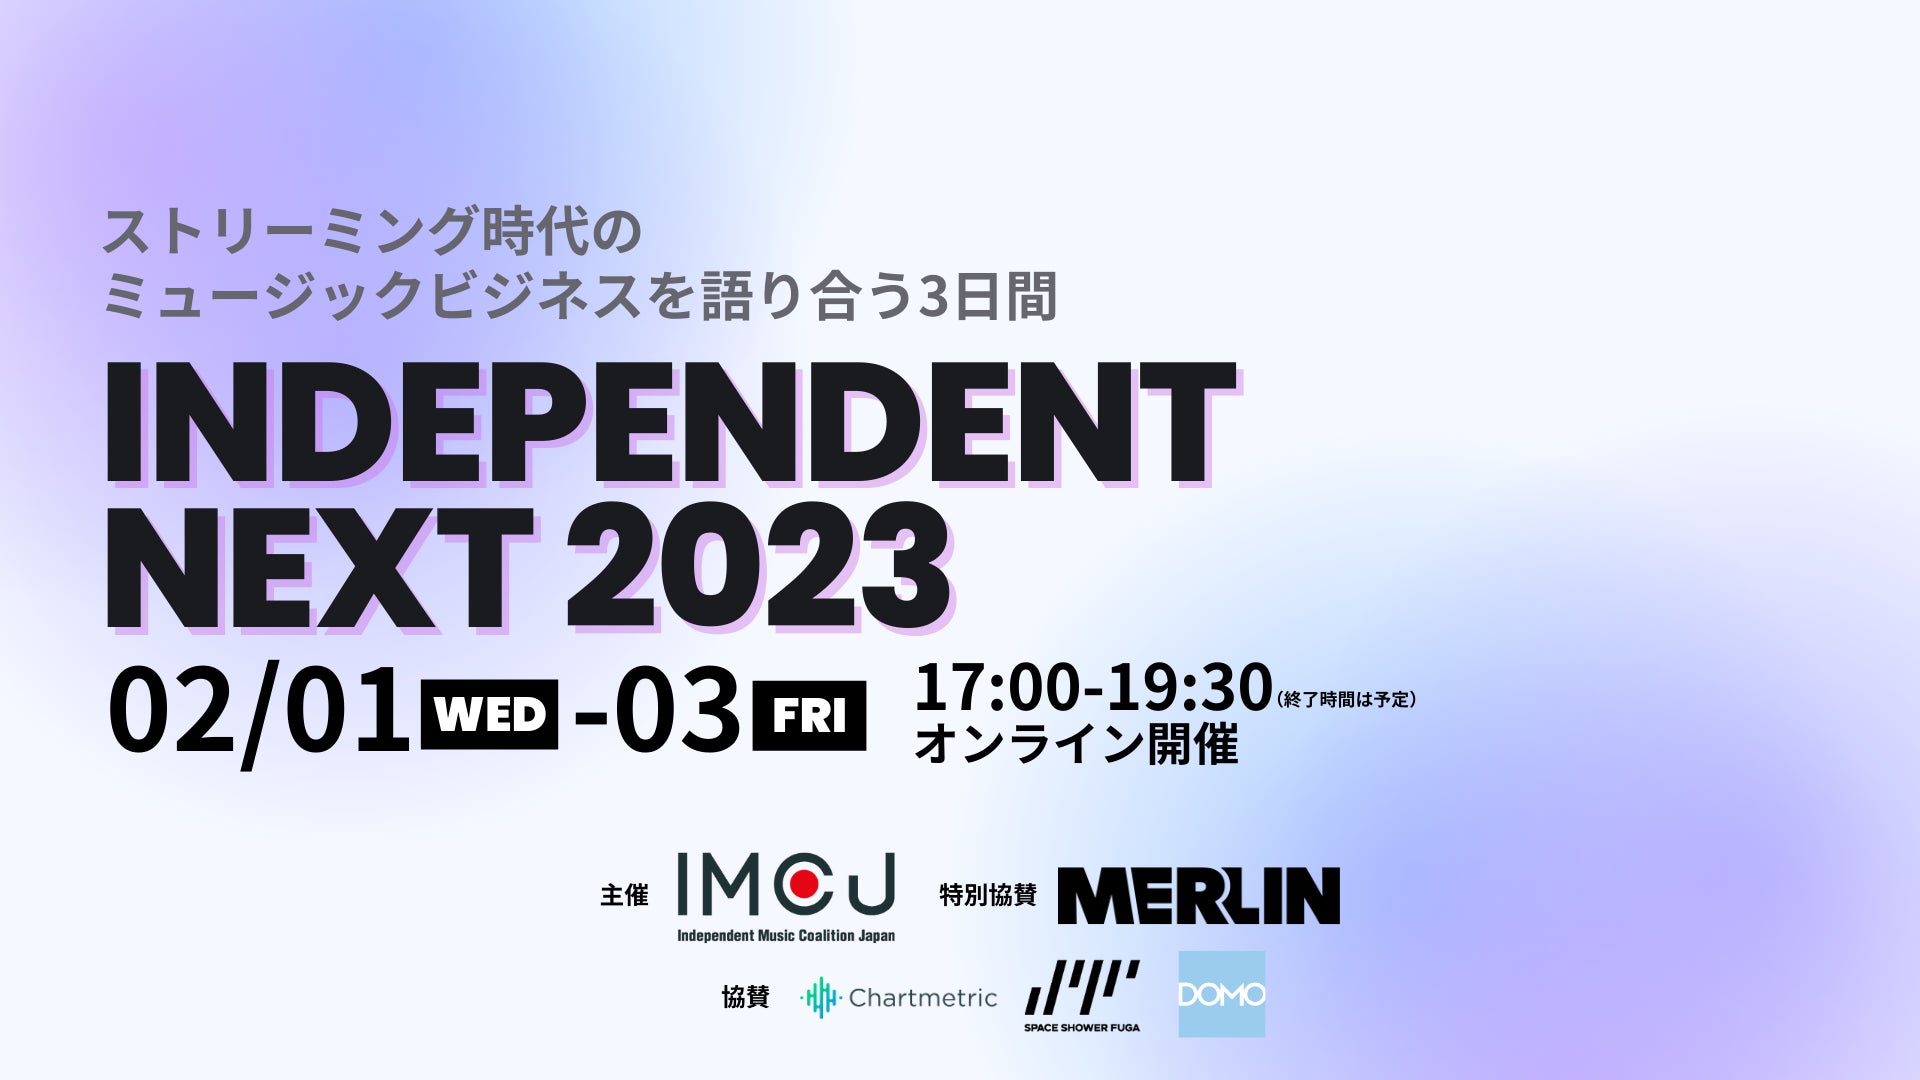 ストリーミング時代のミュージックビジネスを語り合う「Independent Next 2023」がオンライン開催